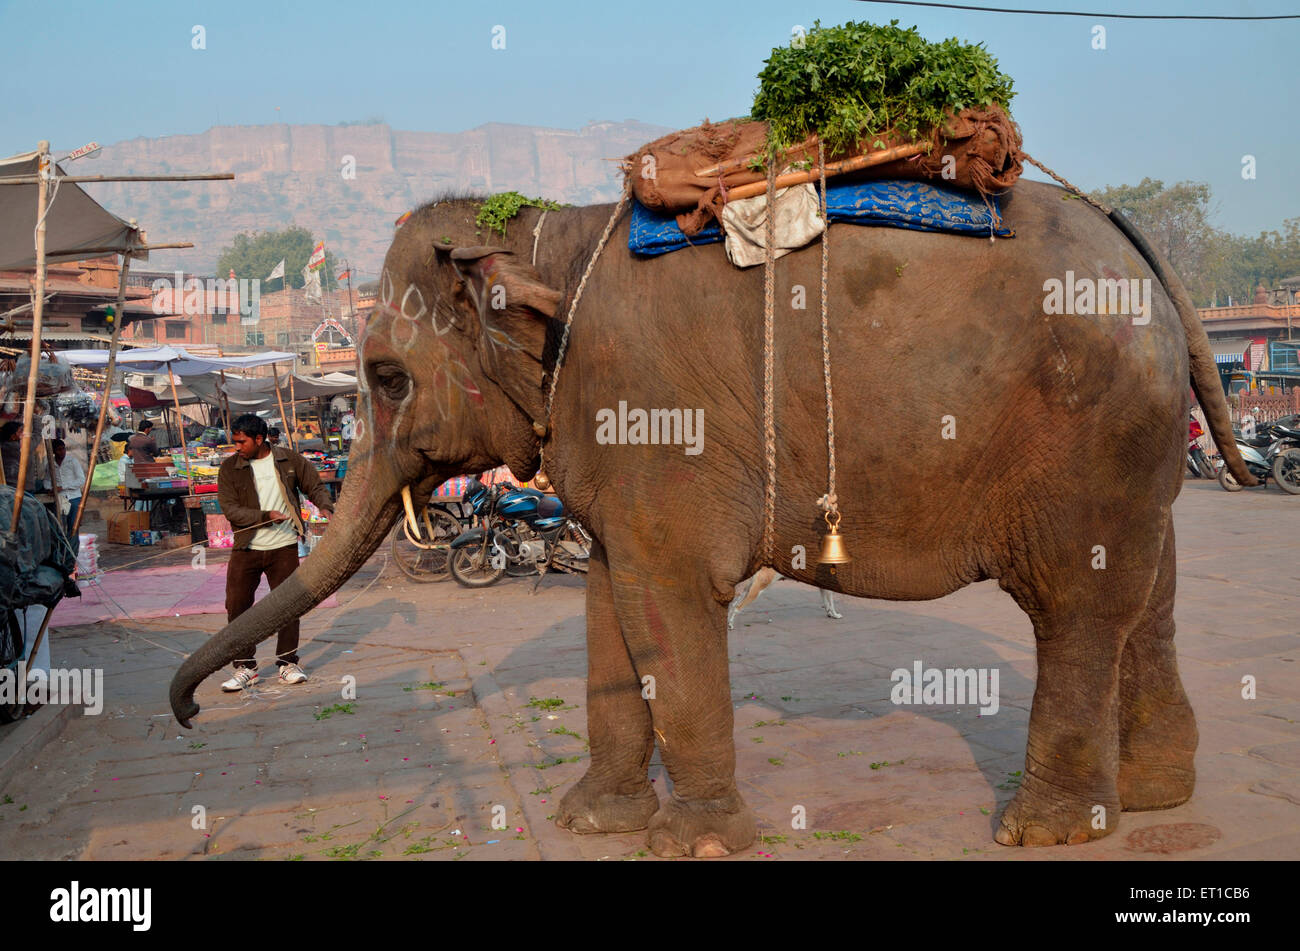 L'éléphant indien Jodhpur Rajasthan Inde Asie mendicité Banque D'Images